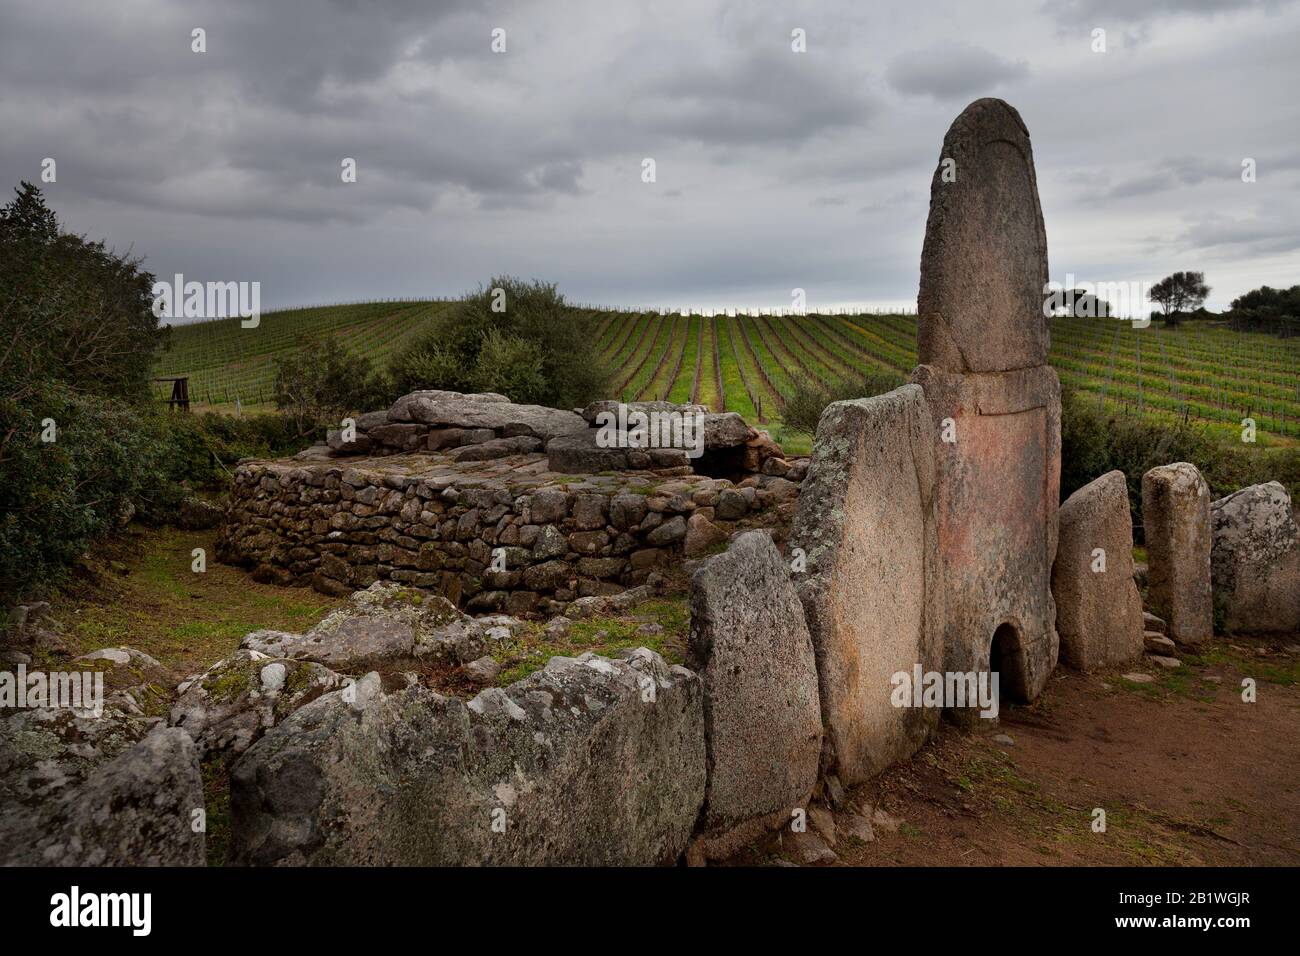 Giants megalithic tombs in Arzachena.Tomba dei Giganti di Coddu Vecchiu. Arzachena, Sardinia. Italy Stock Photo